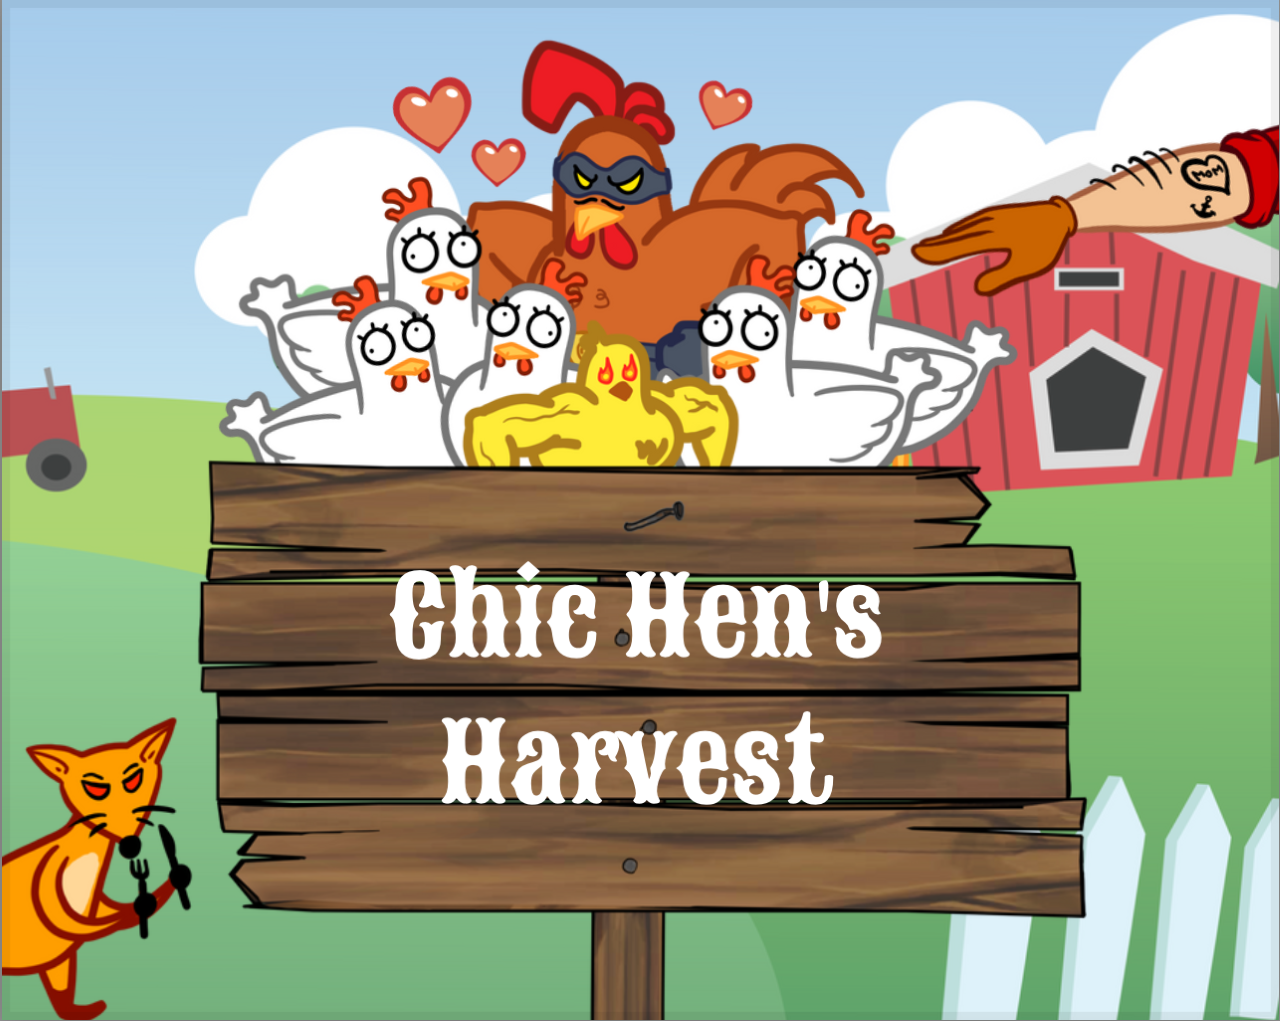 Chic Hen's Harvest